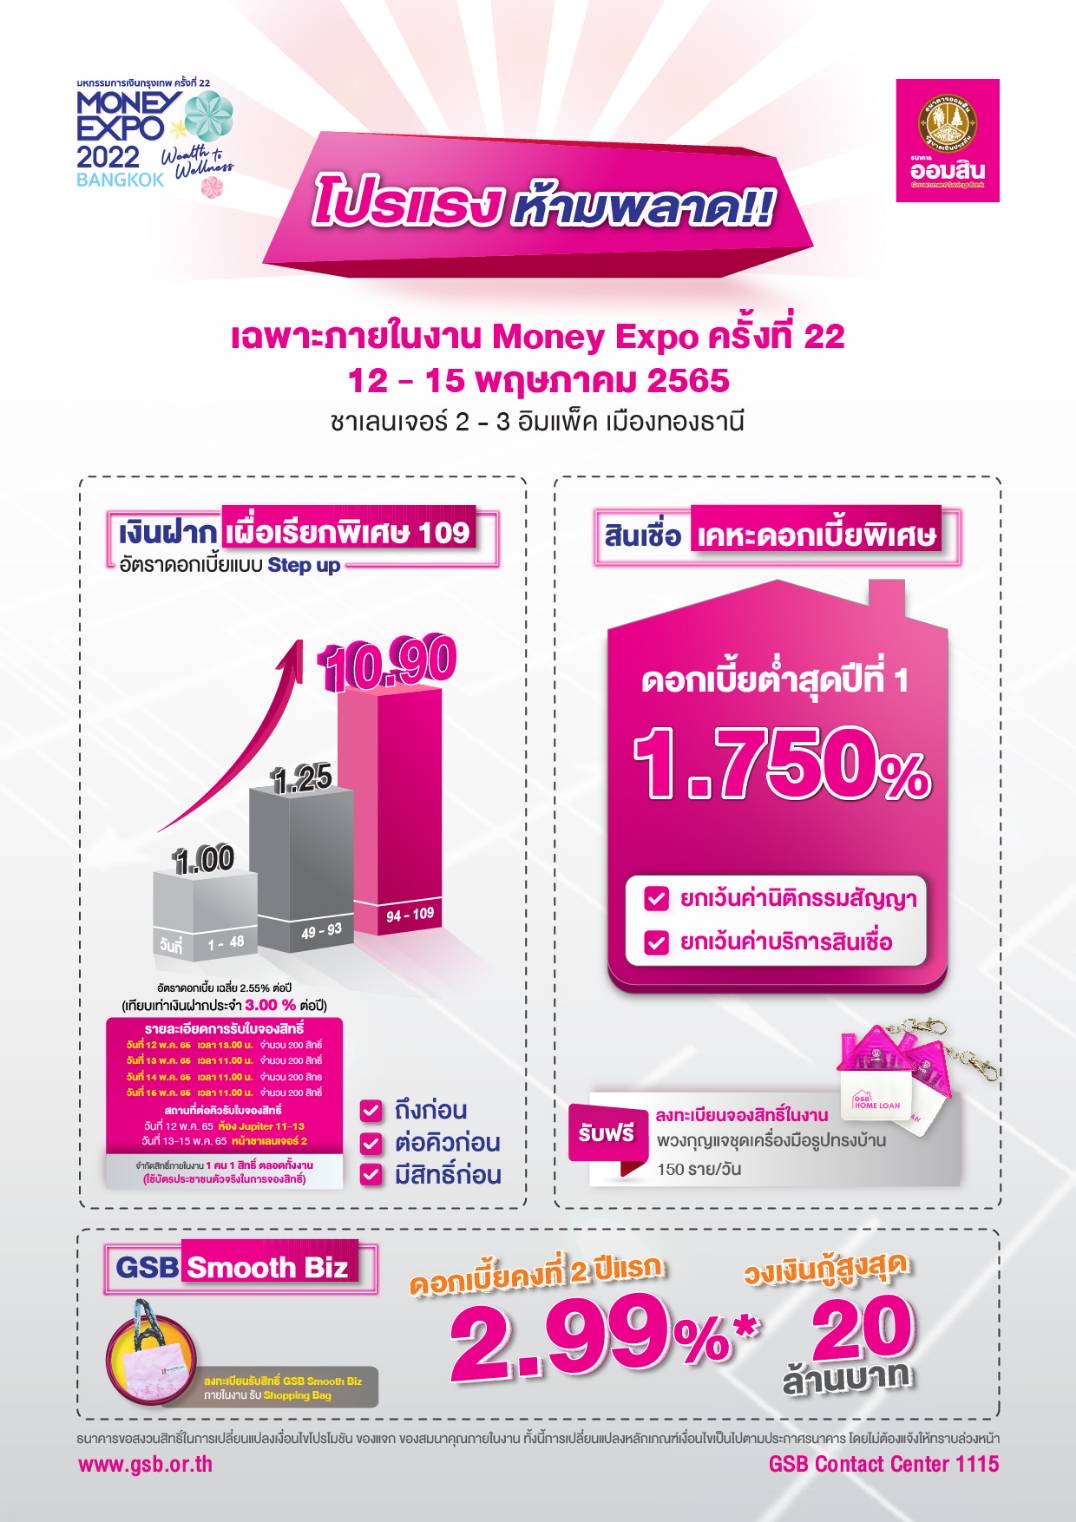 ออมสินขนโปรจัดเต็มงาน Money Expo 2022 ครั้งที่ 22